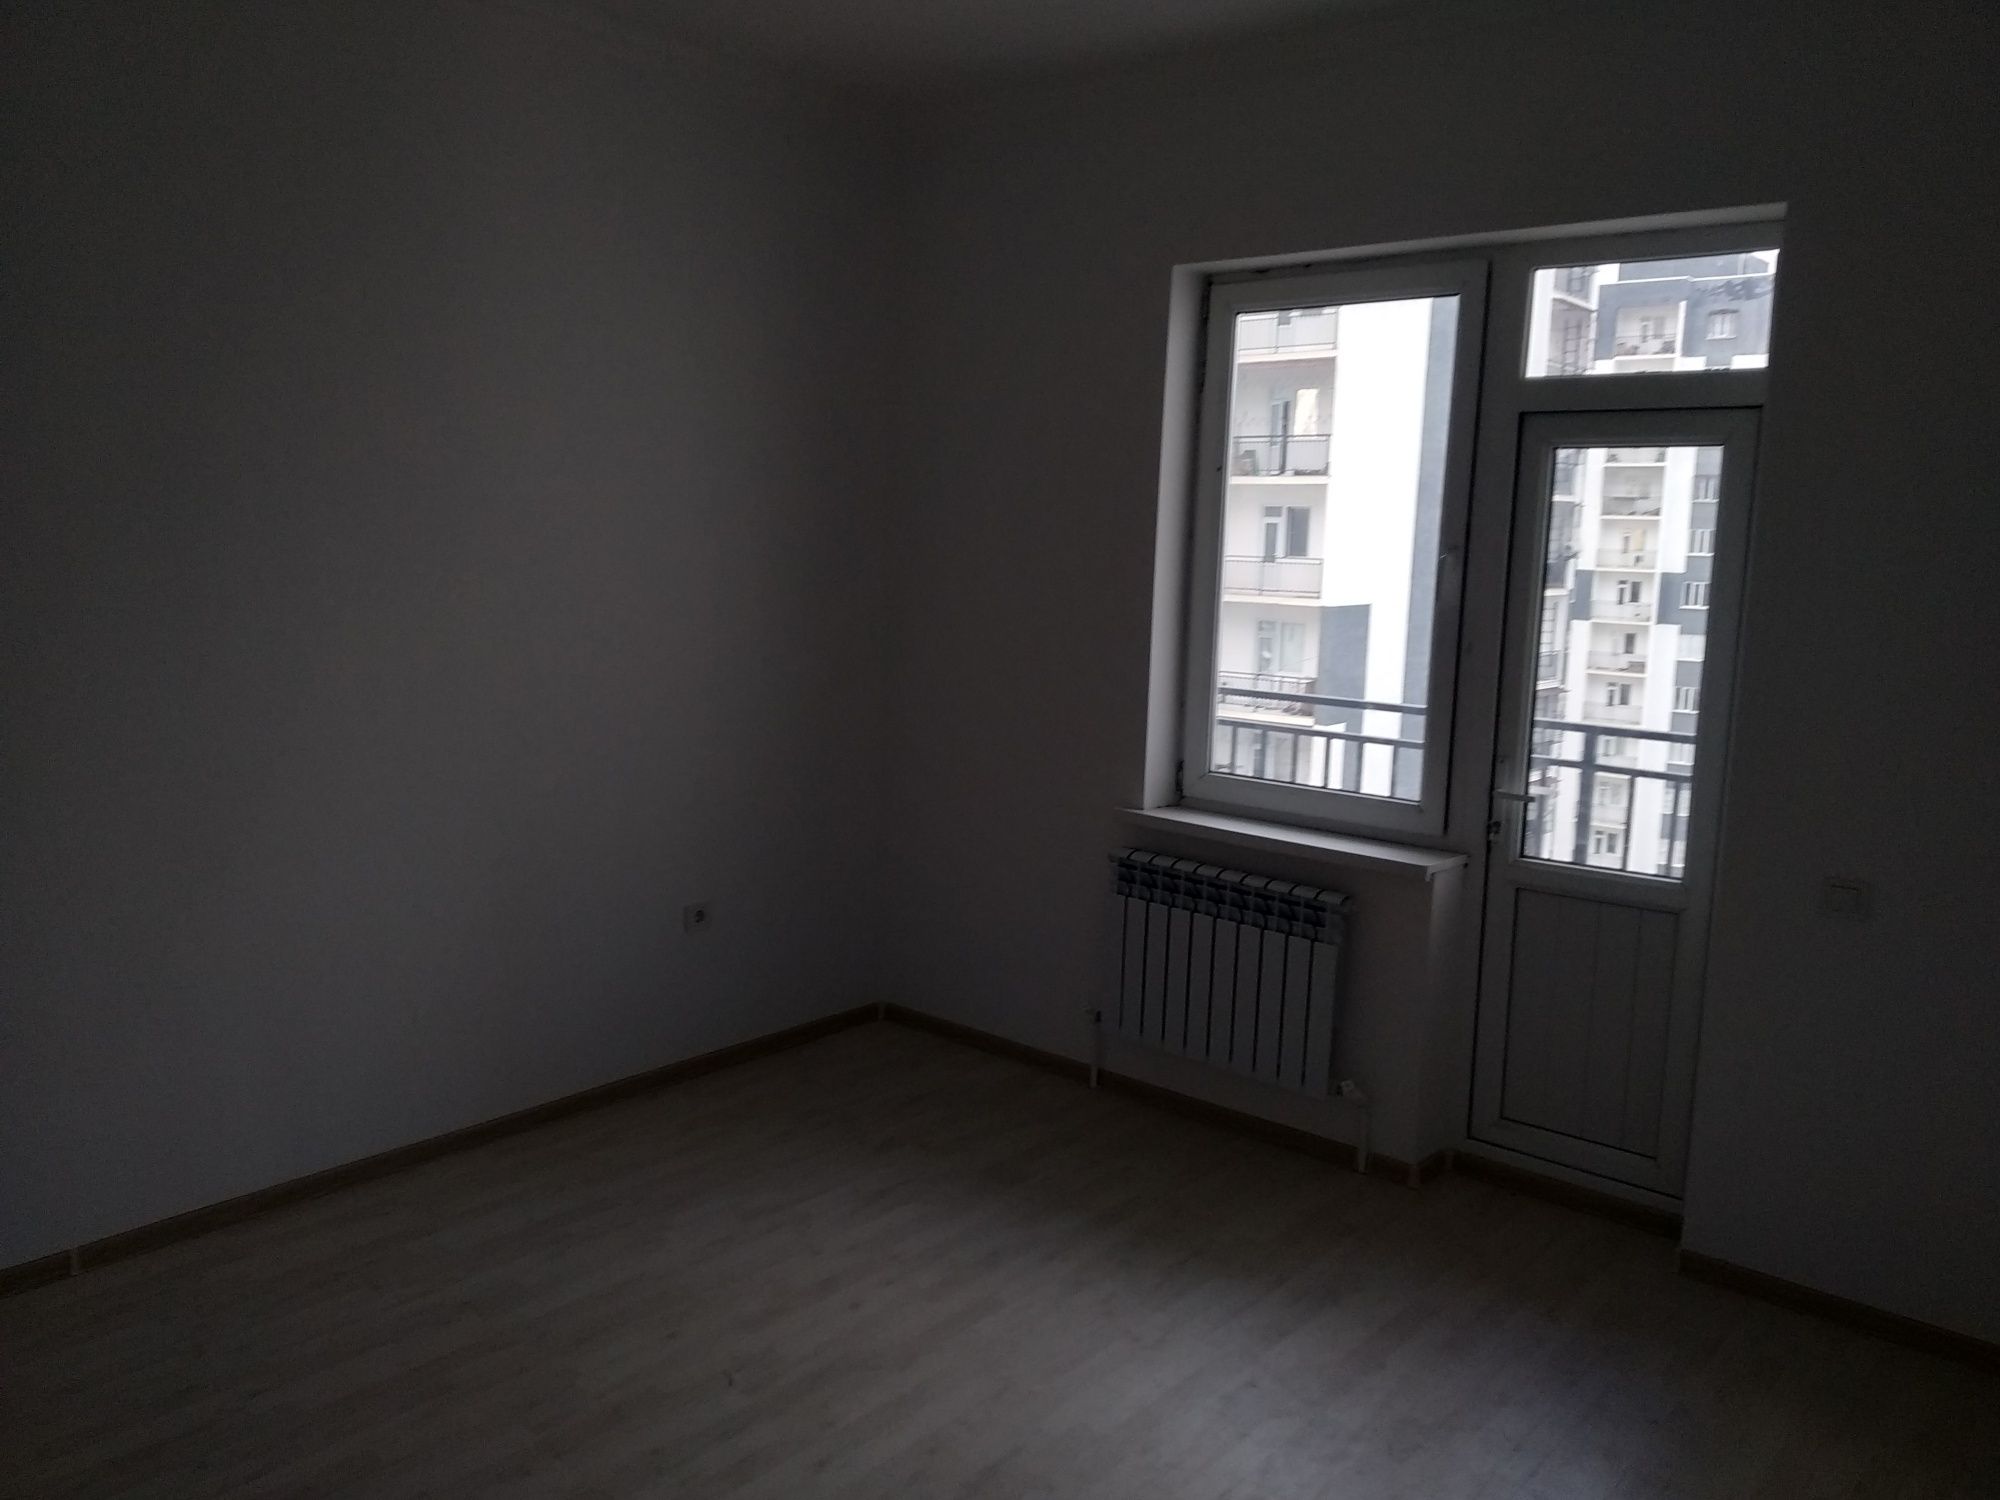 Продается 3-х комнатная квартира в Яшнабадском районе мах. Олмос